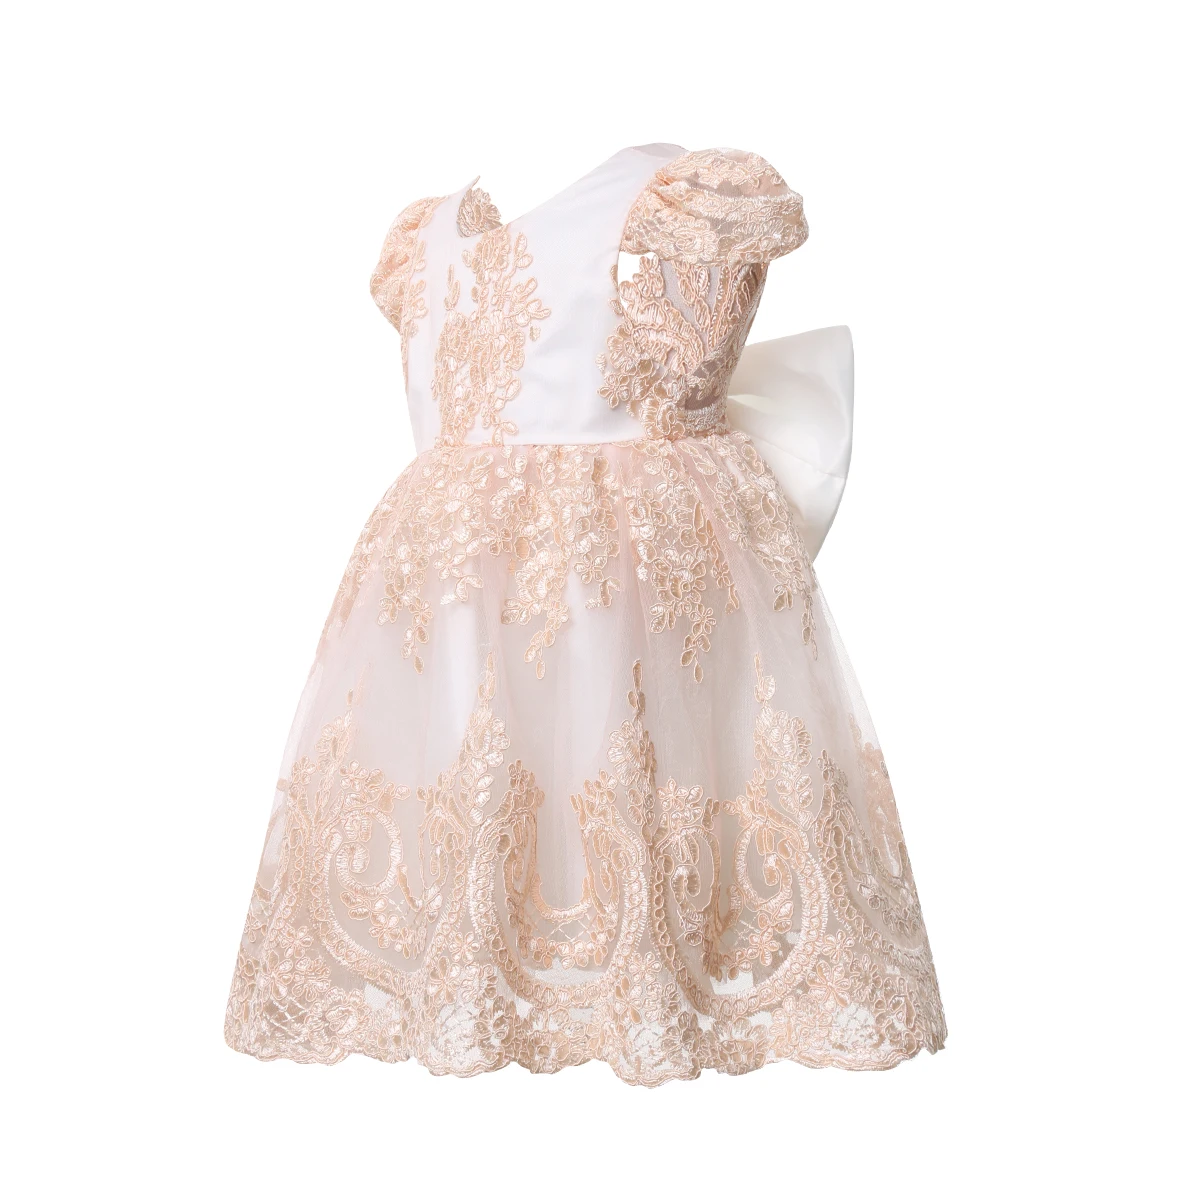 Г. Милое платье с вышивкой для маленьких девочек праздничное платье-пачка принцессы с бантом на свадьбу модная одежда От 6 месяцев до 4 лет